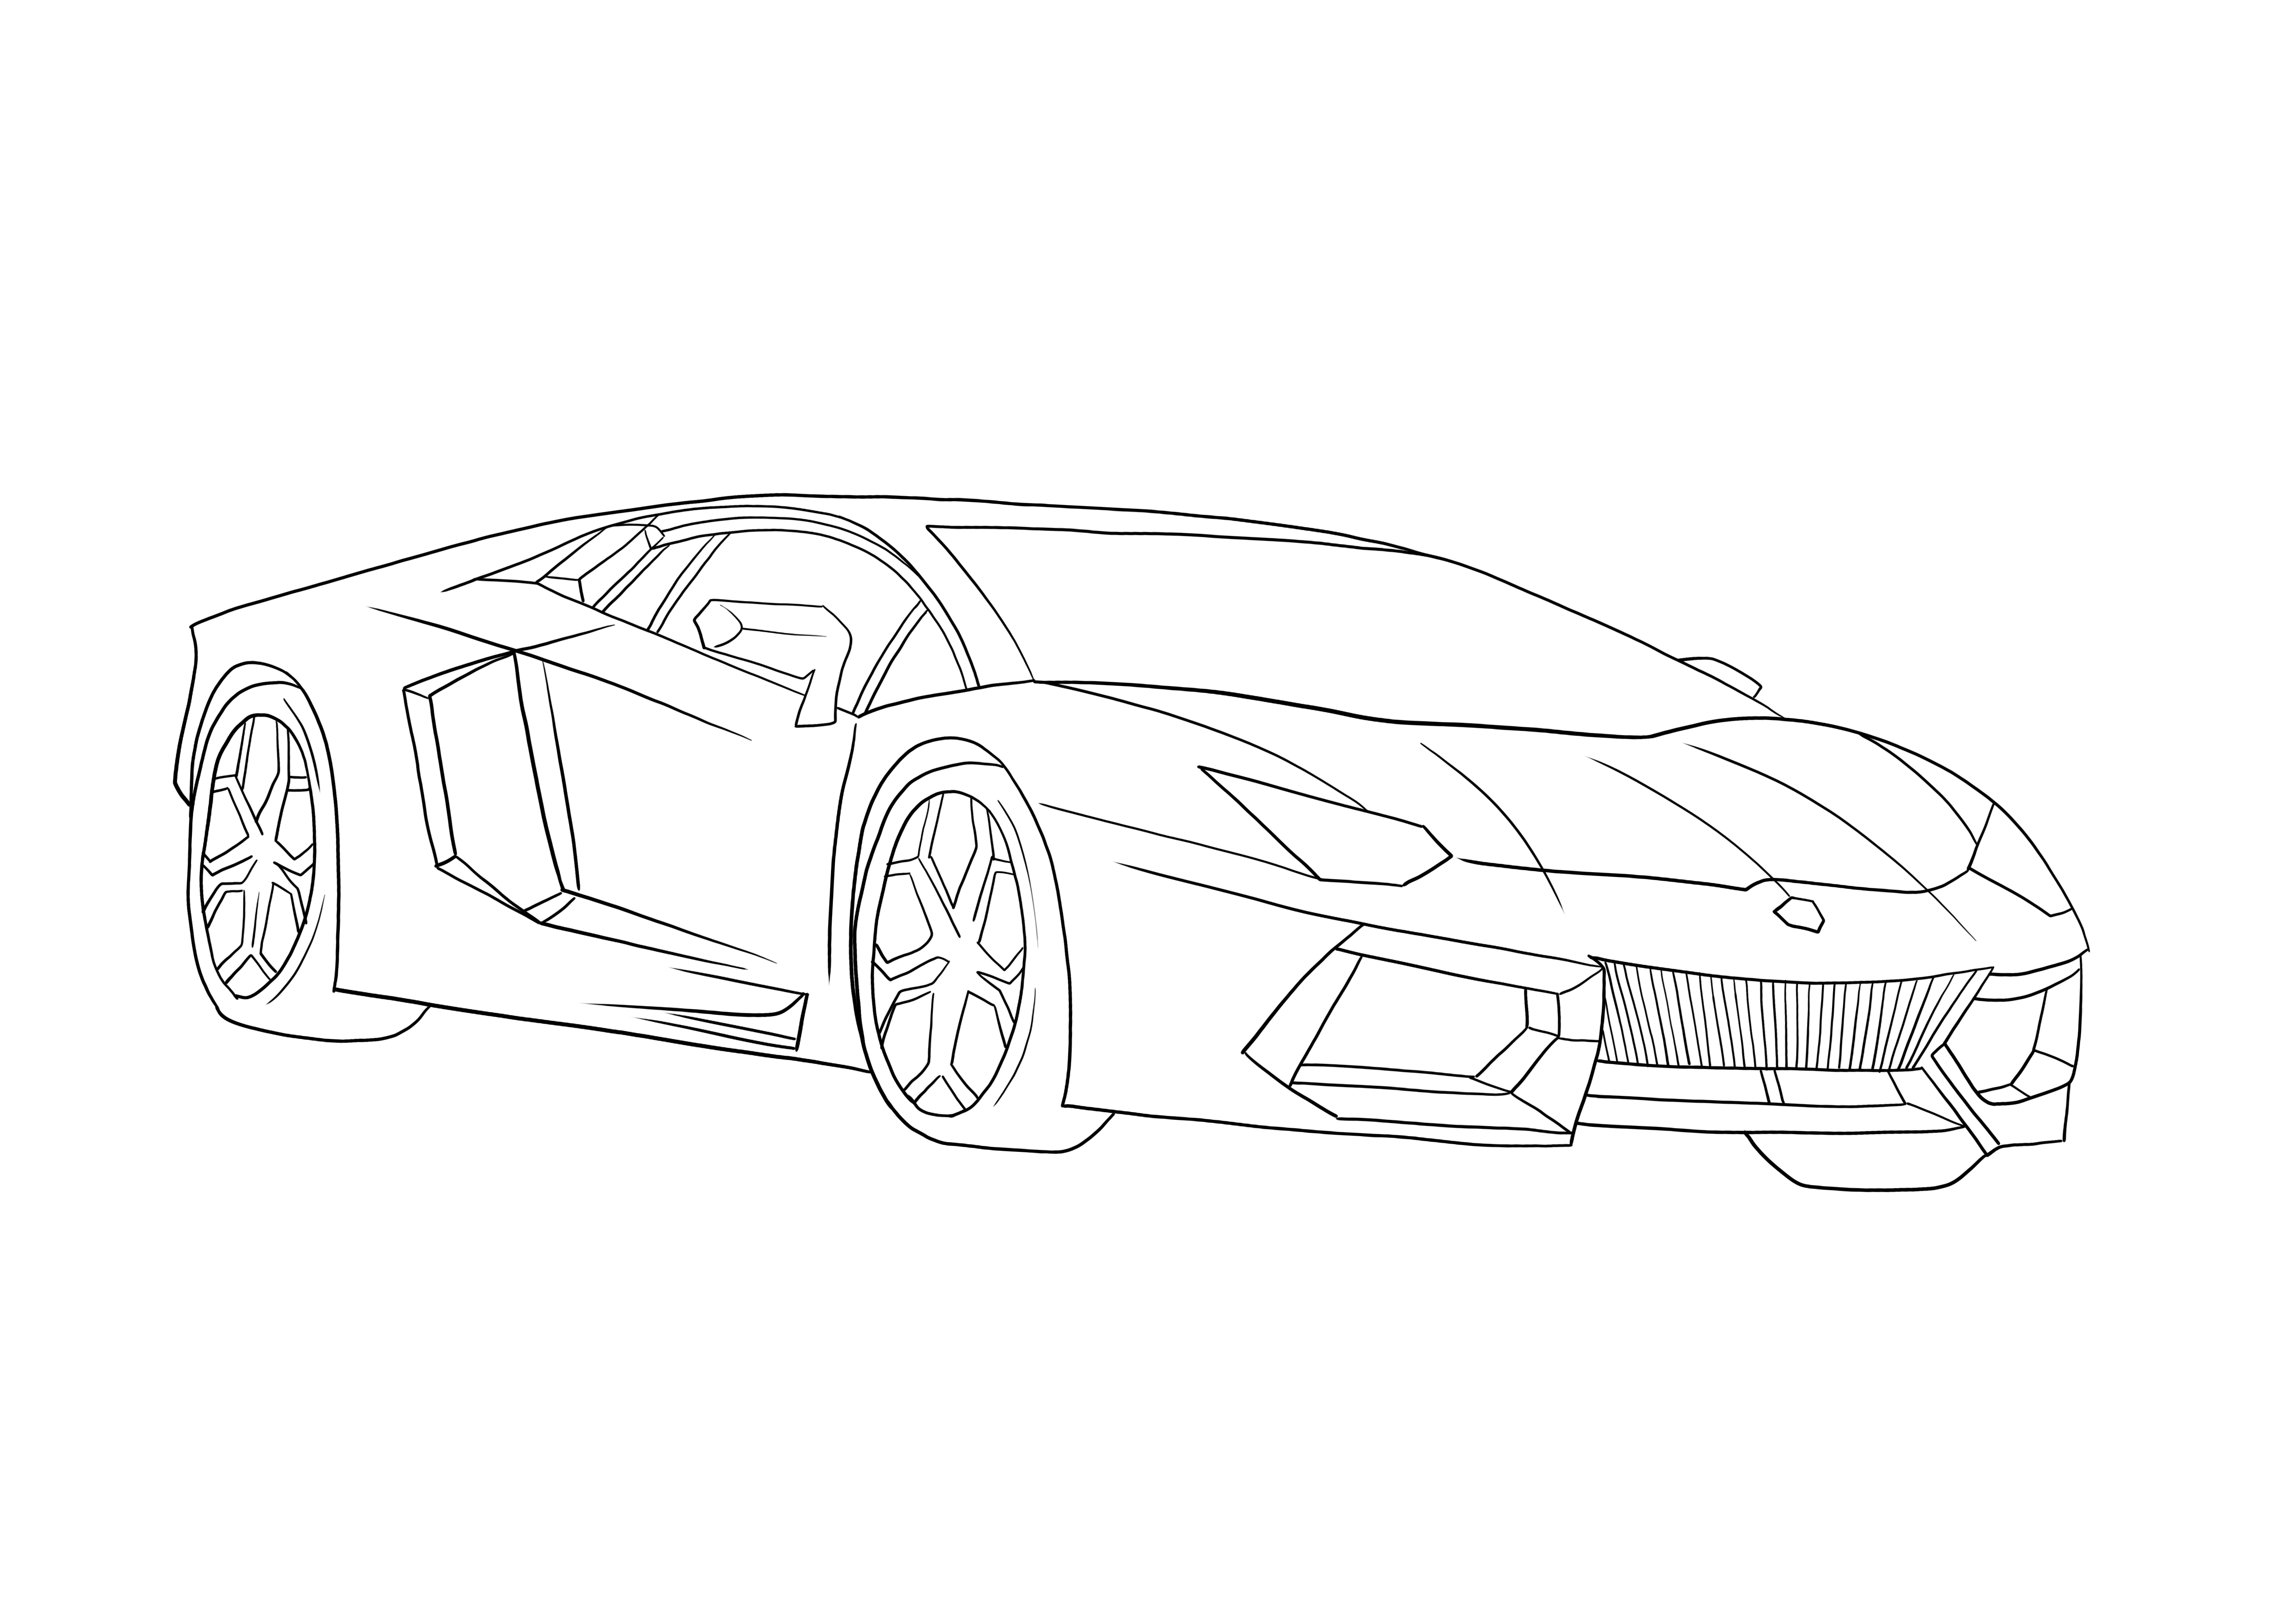 Rápido Lamborghini Aventador para colorear e imprimir gratis